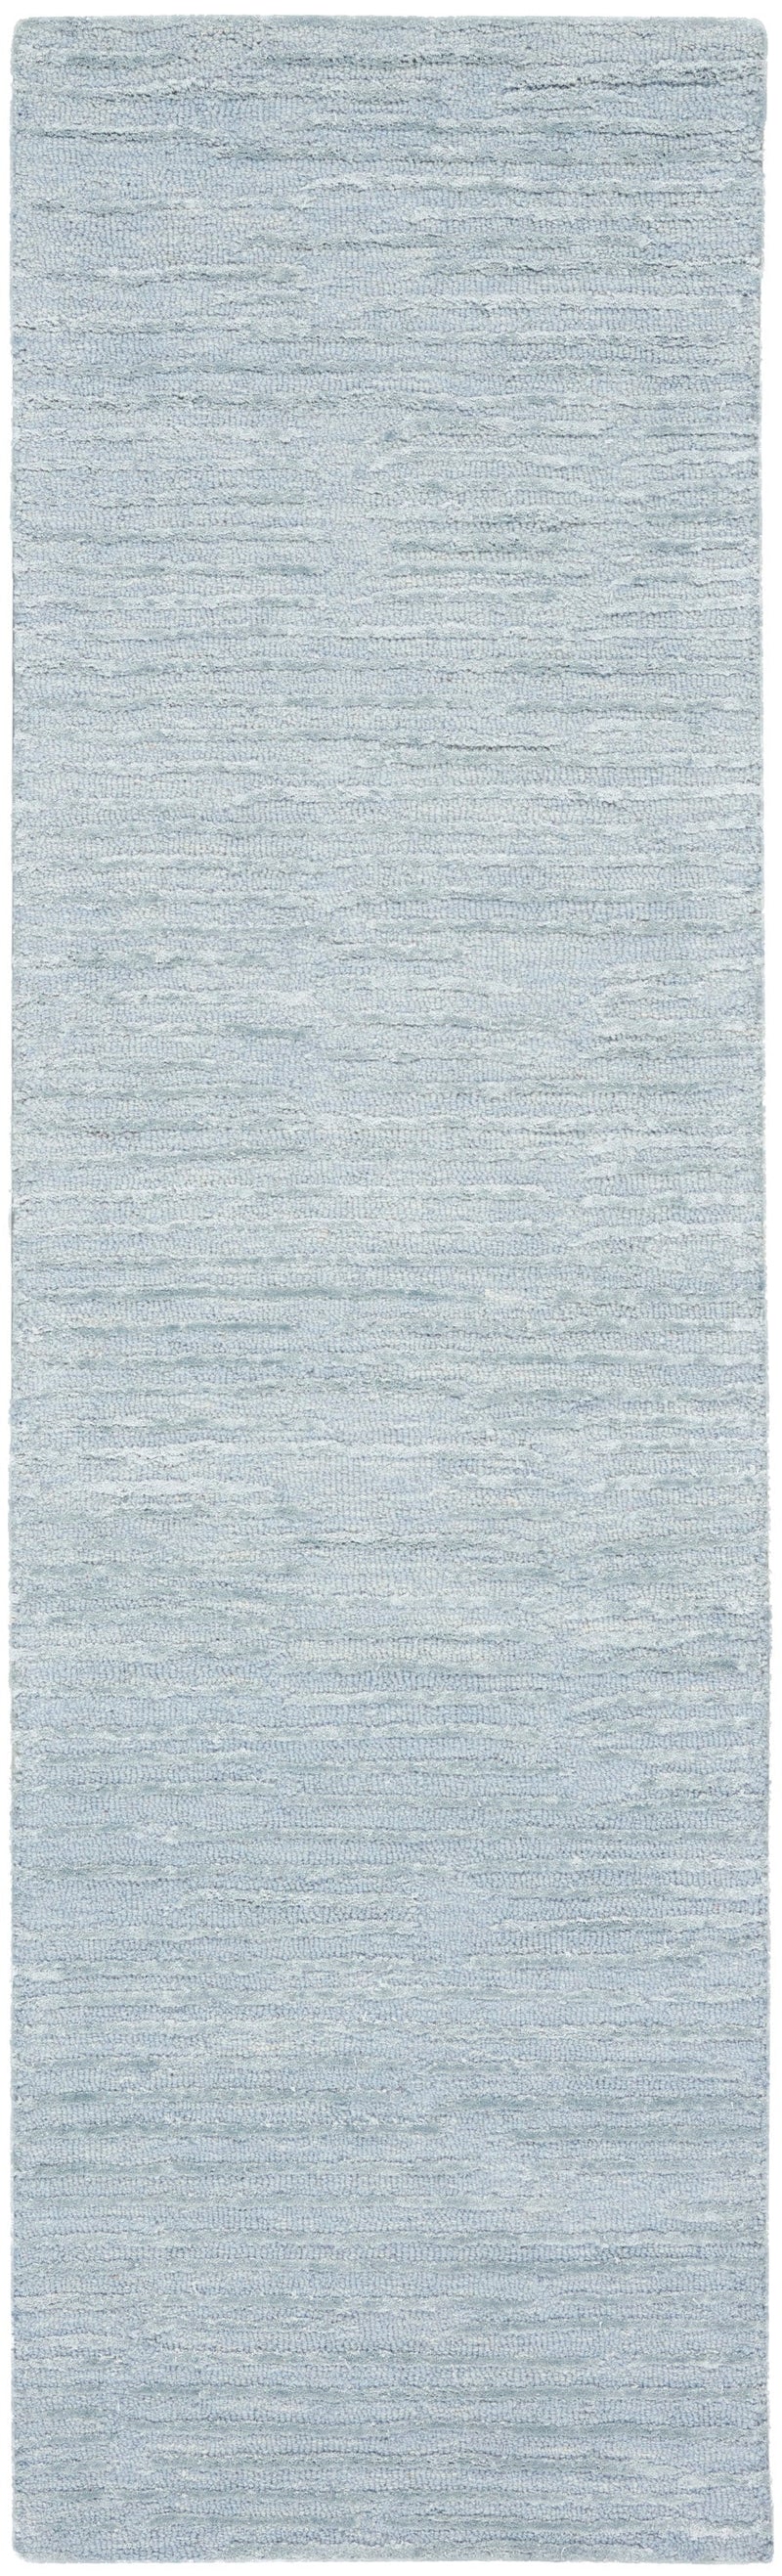 media image for ck010 linear handmade light blue rug by nourison 99446879950 redo 2 233